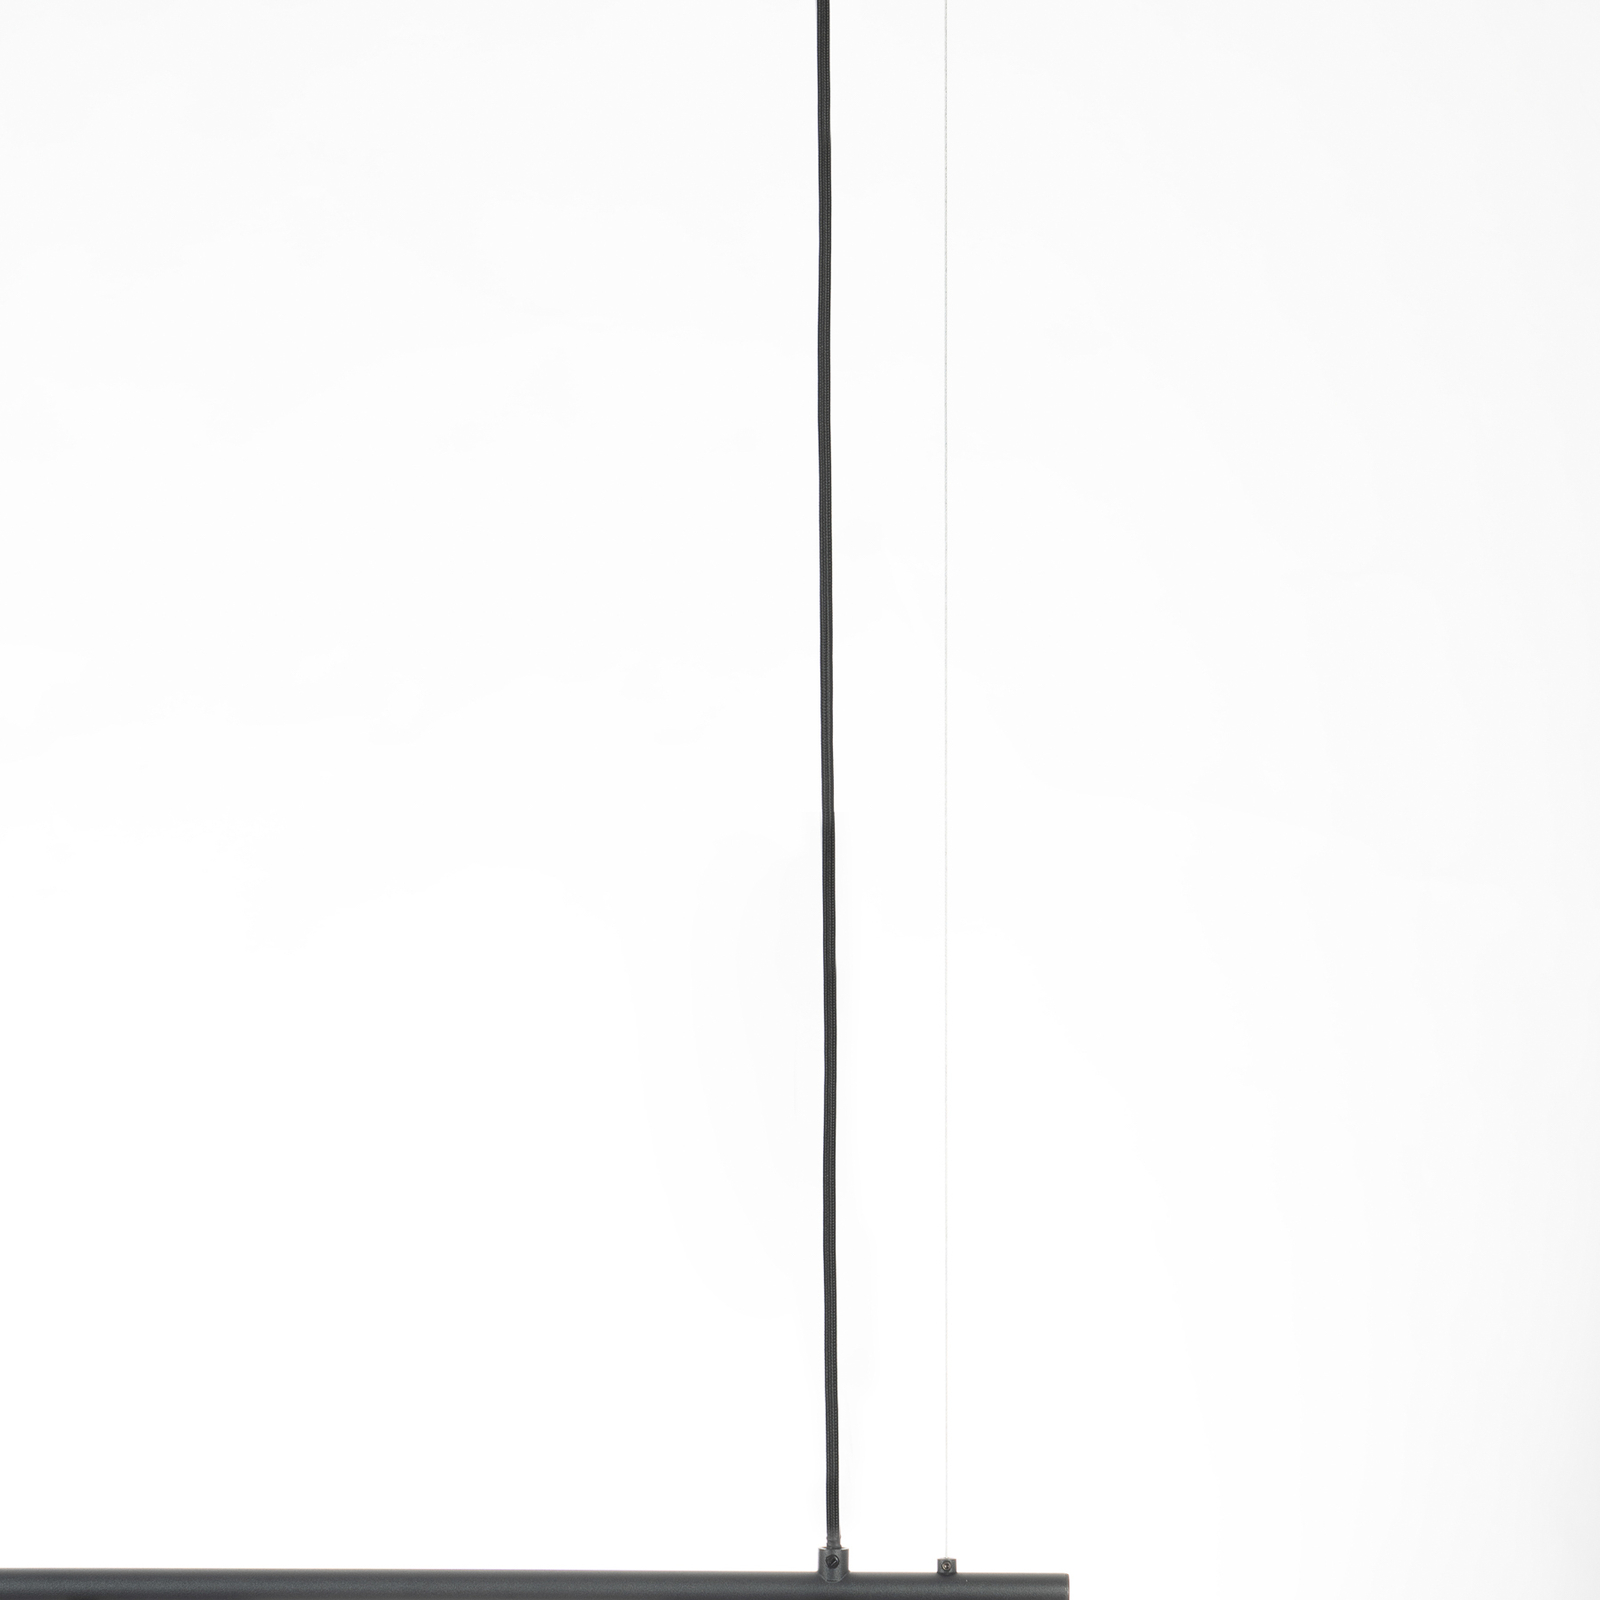 Lucande Mikolay függő lámpa, négy izzós, fekete